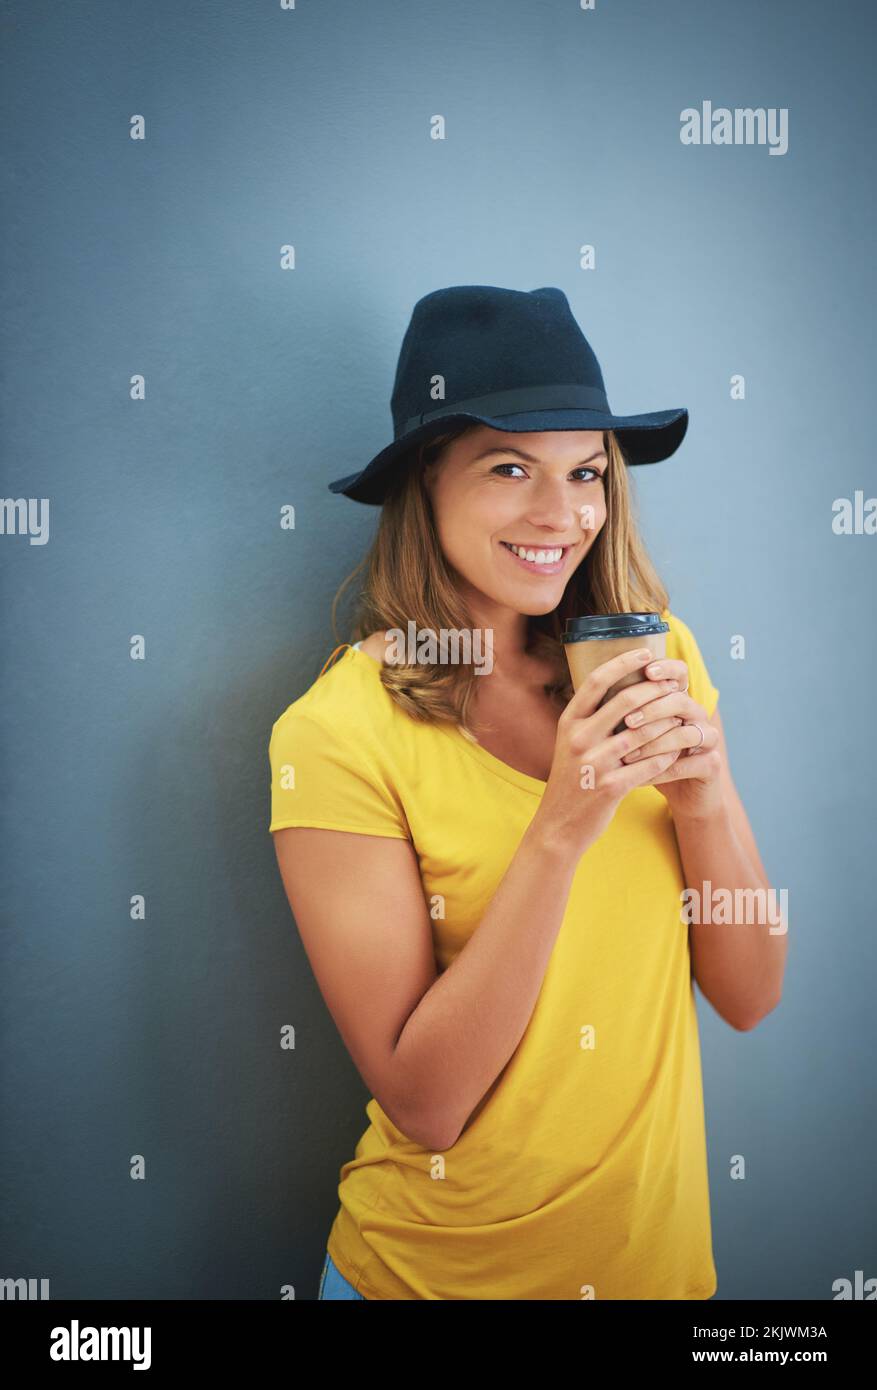 Frau, Mode oder Kaffeetasse im Studio mit blauem Hintergrund und Marketingmodell, Werbefläche oder Modell-Branding. Porträt, Lächeln oder glücklicher Schüler Stockfoto